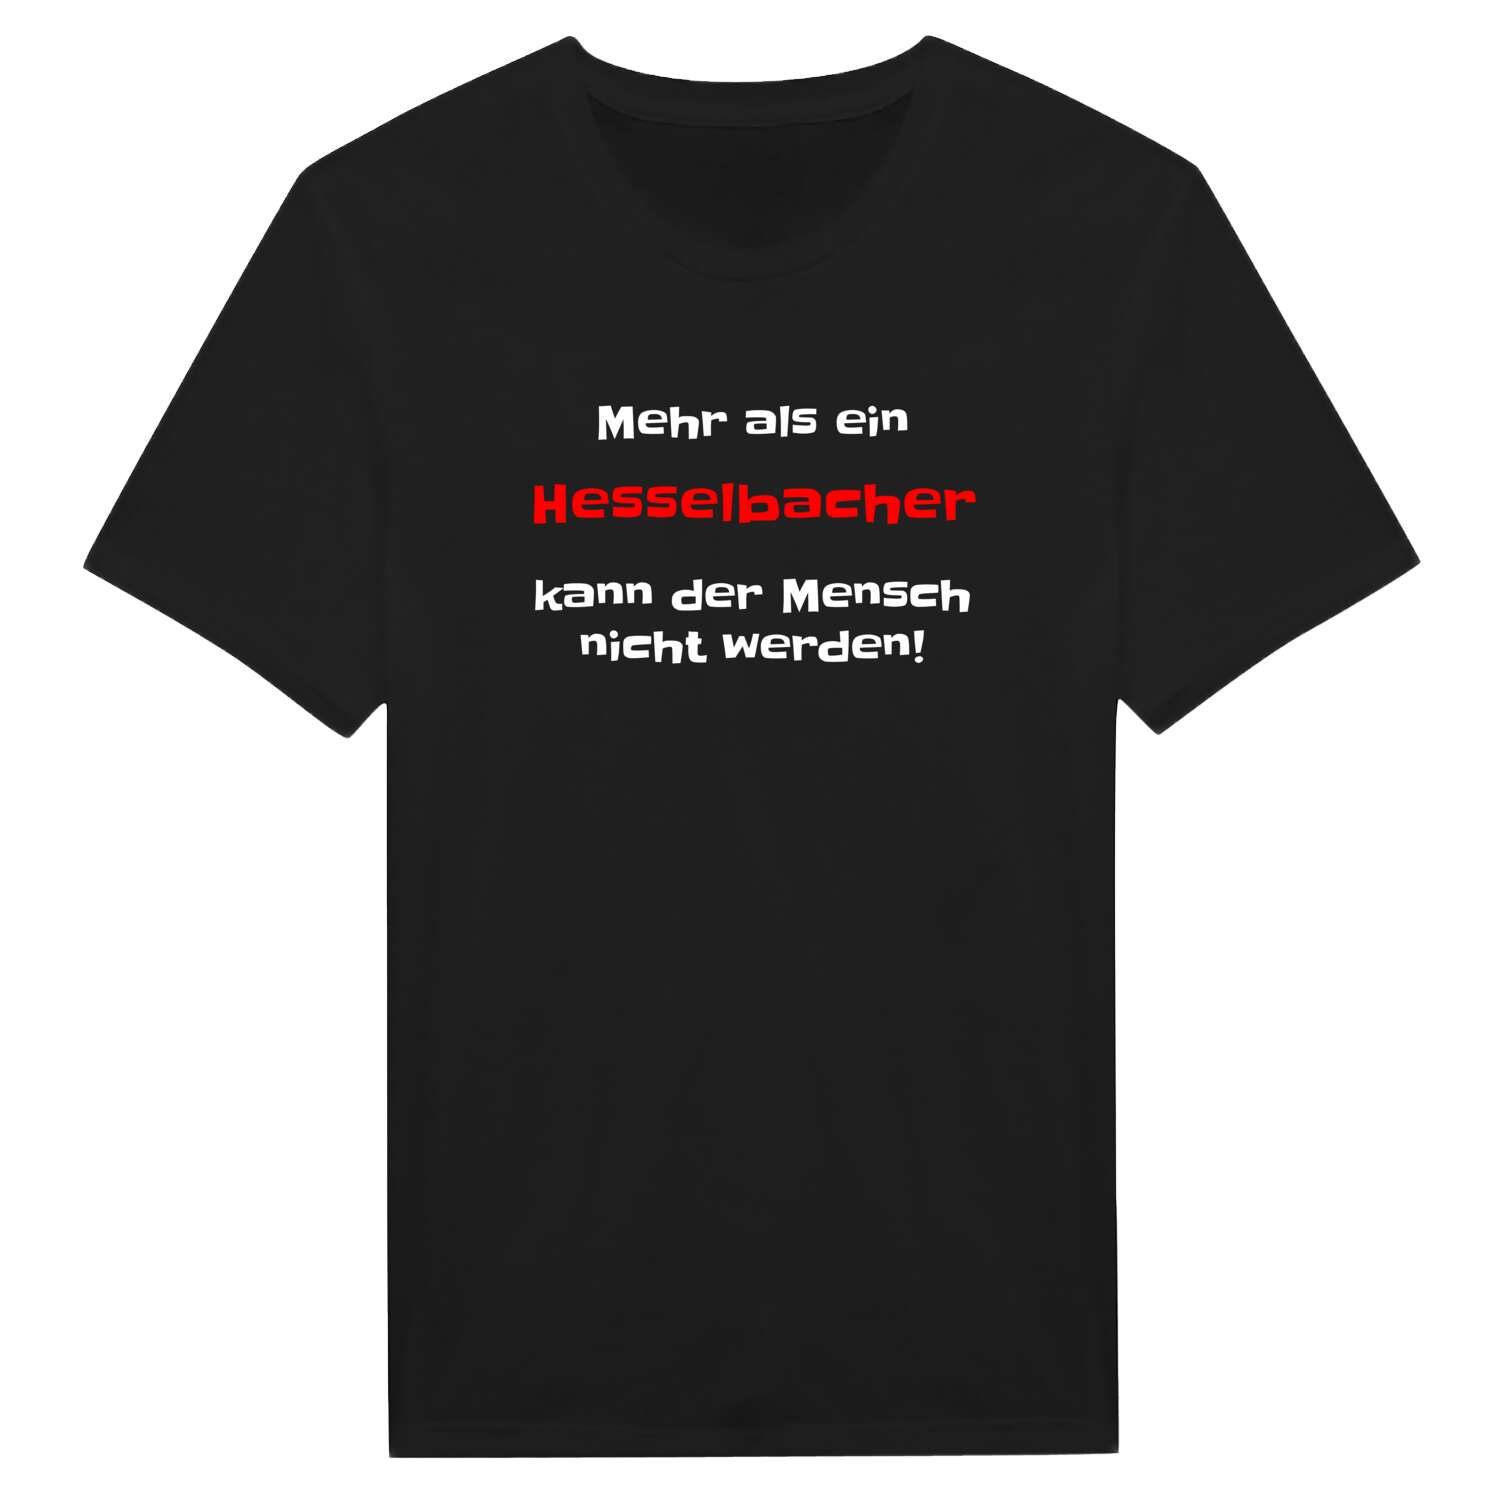 Hesselbach T-Shirt »Mehr als ein«